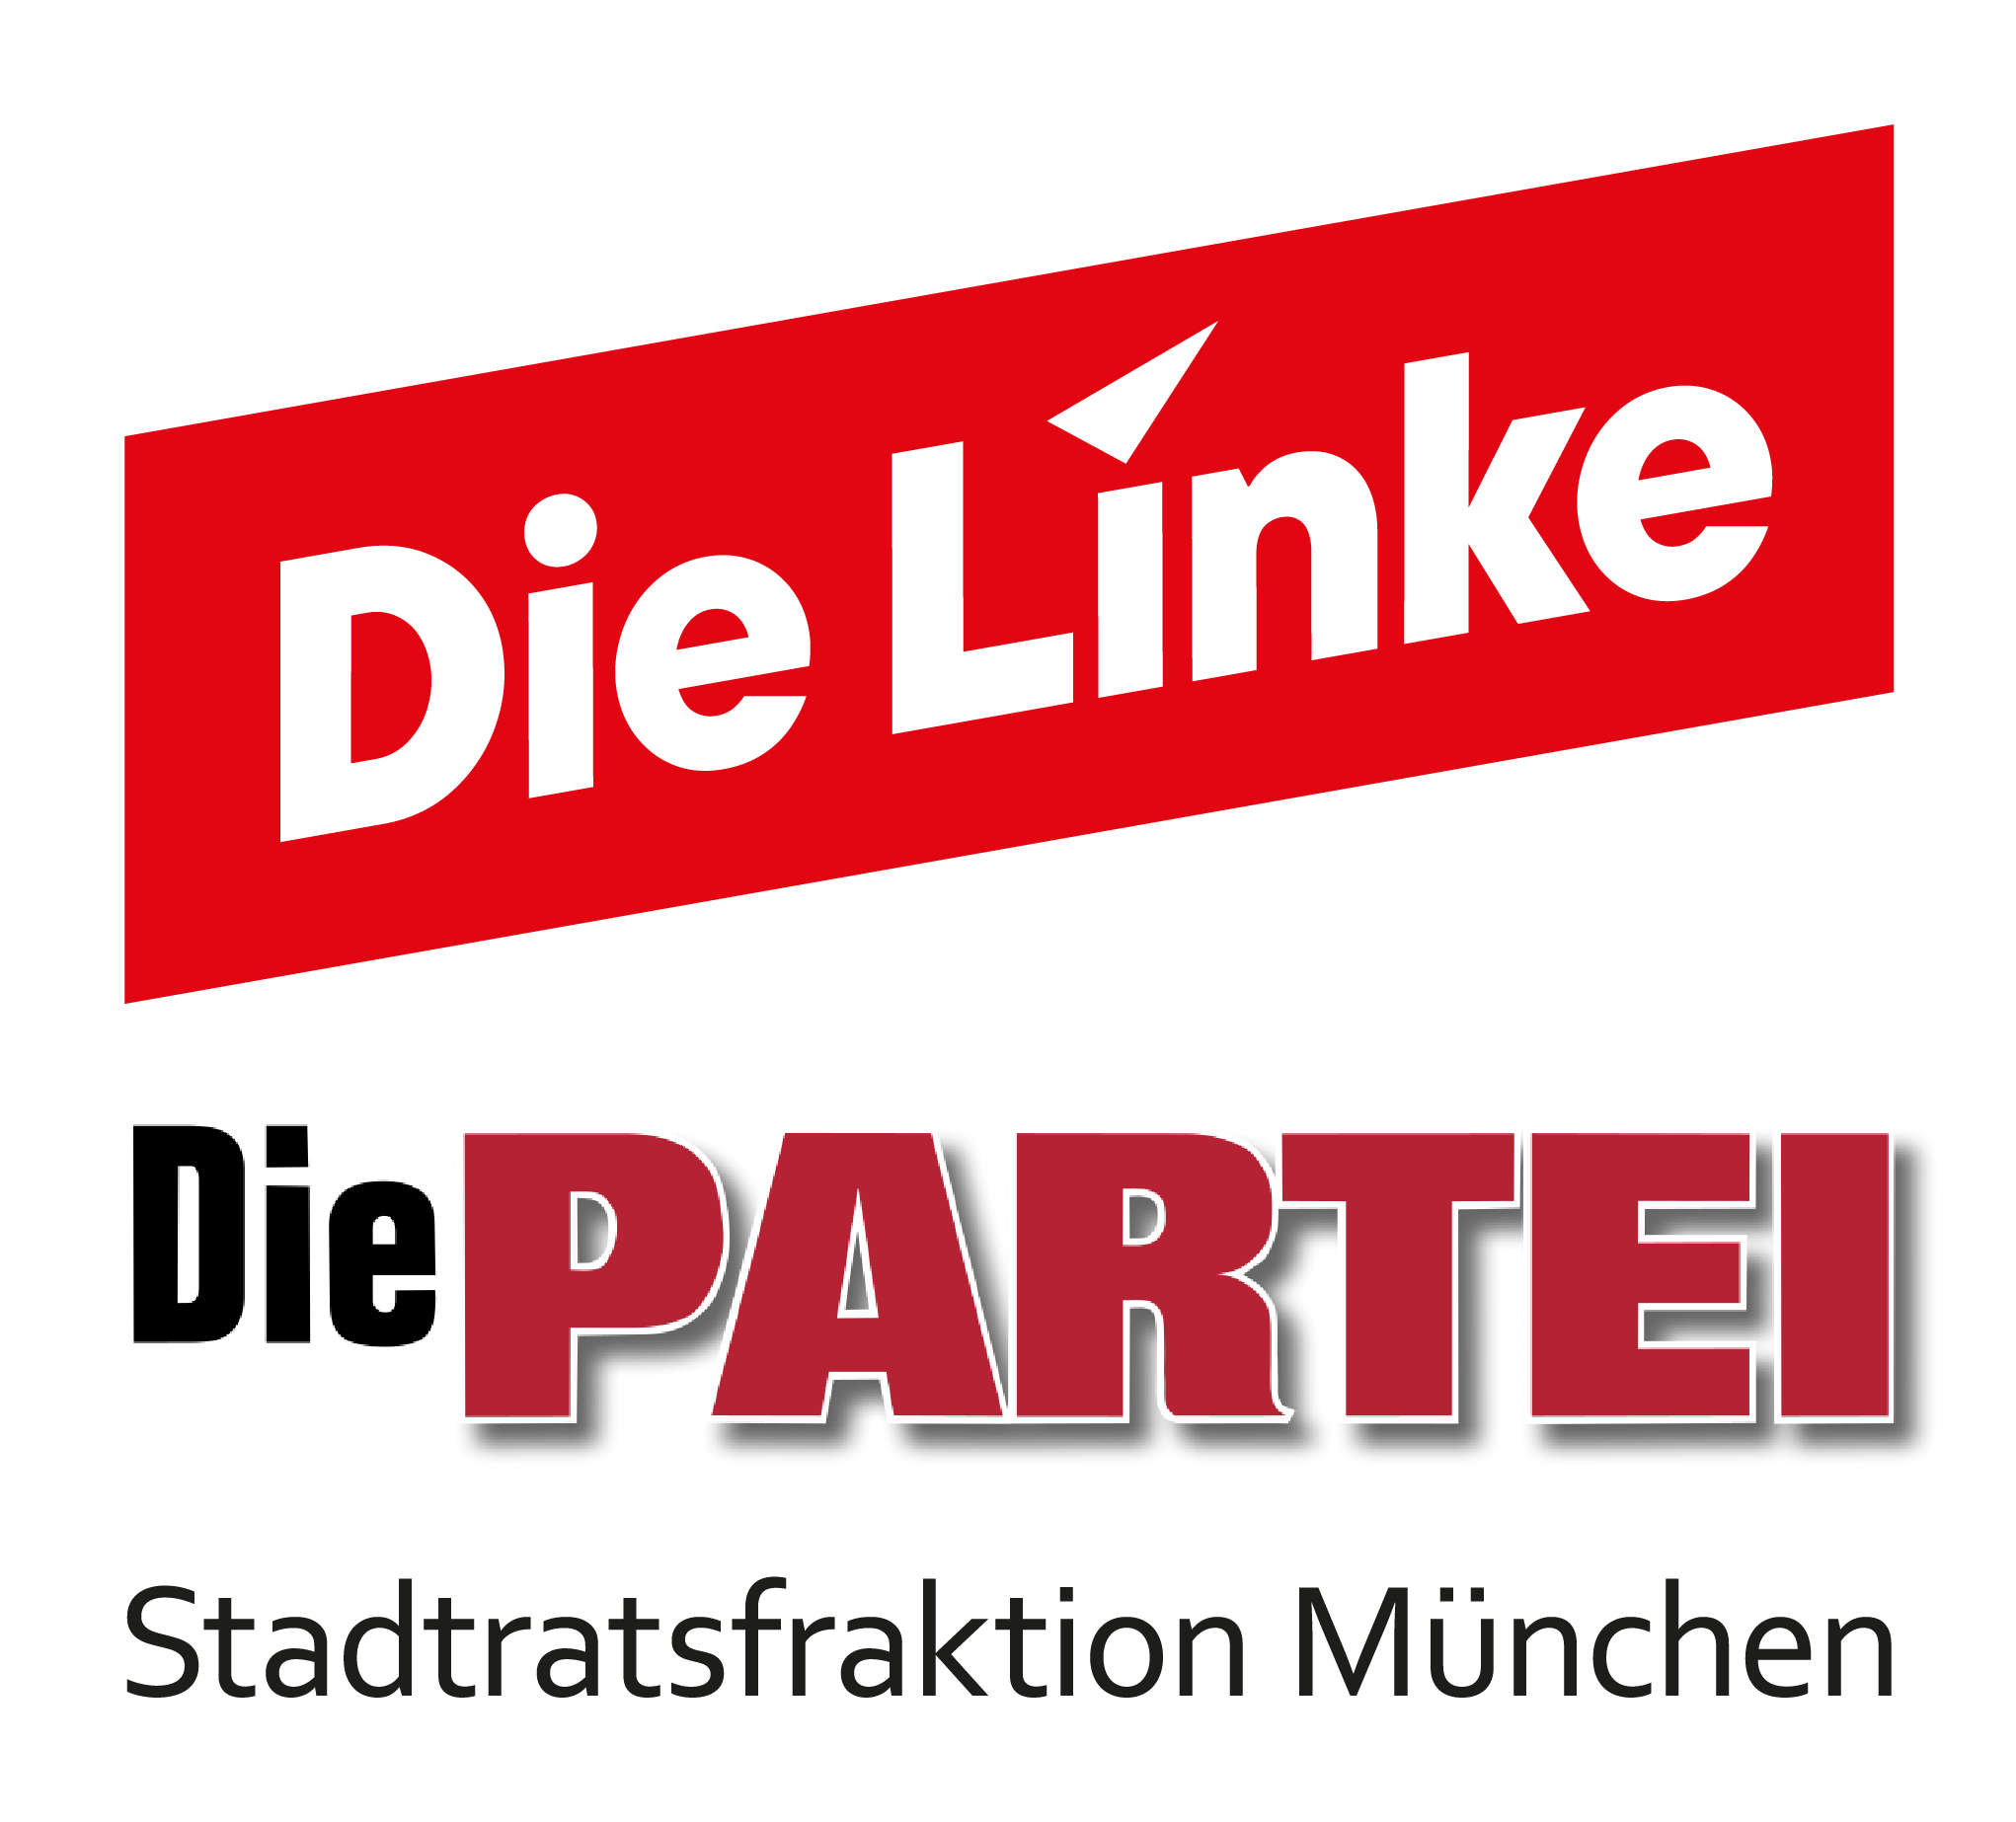 Die Linke / Die PARTEI Stadtratsfraktion München